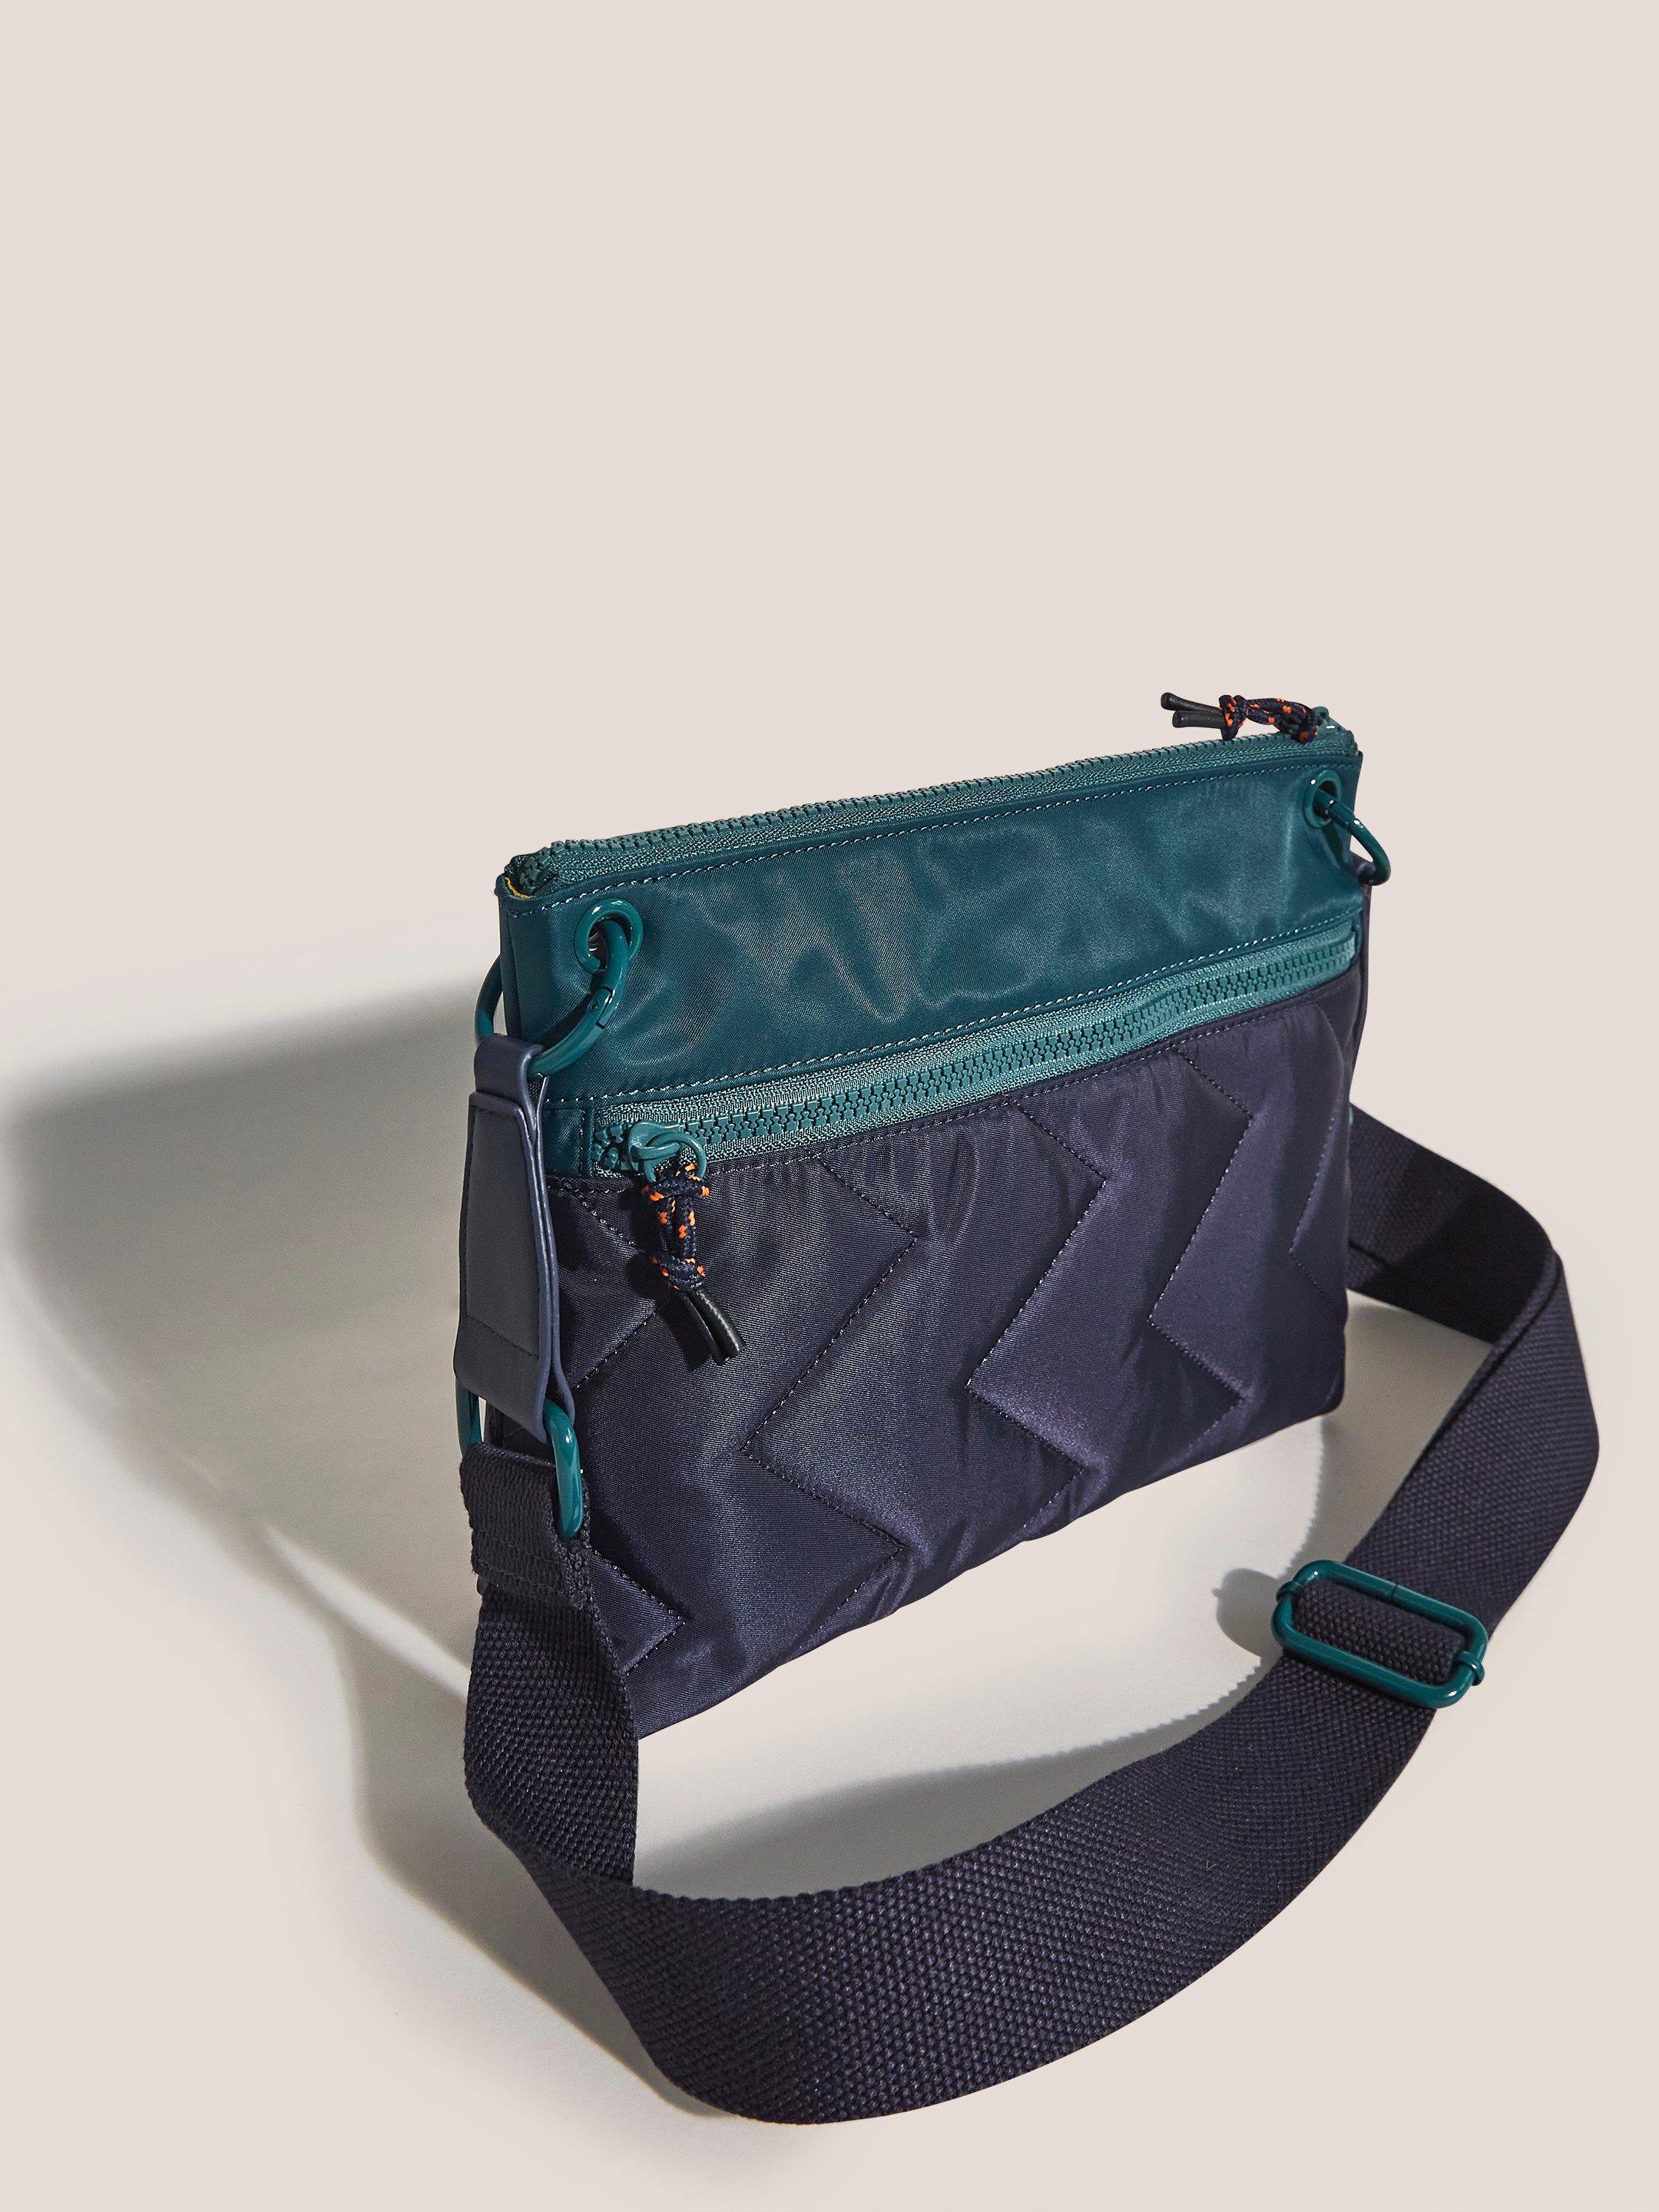 Wanda Nylon Crossbody Bag in NAVY MULTI - FLAT BACK